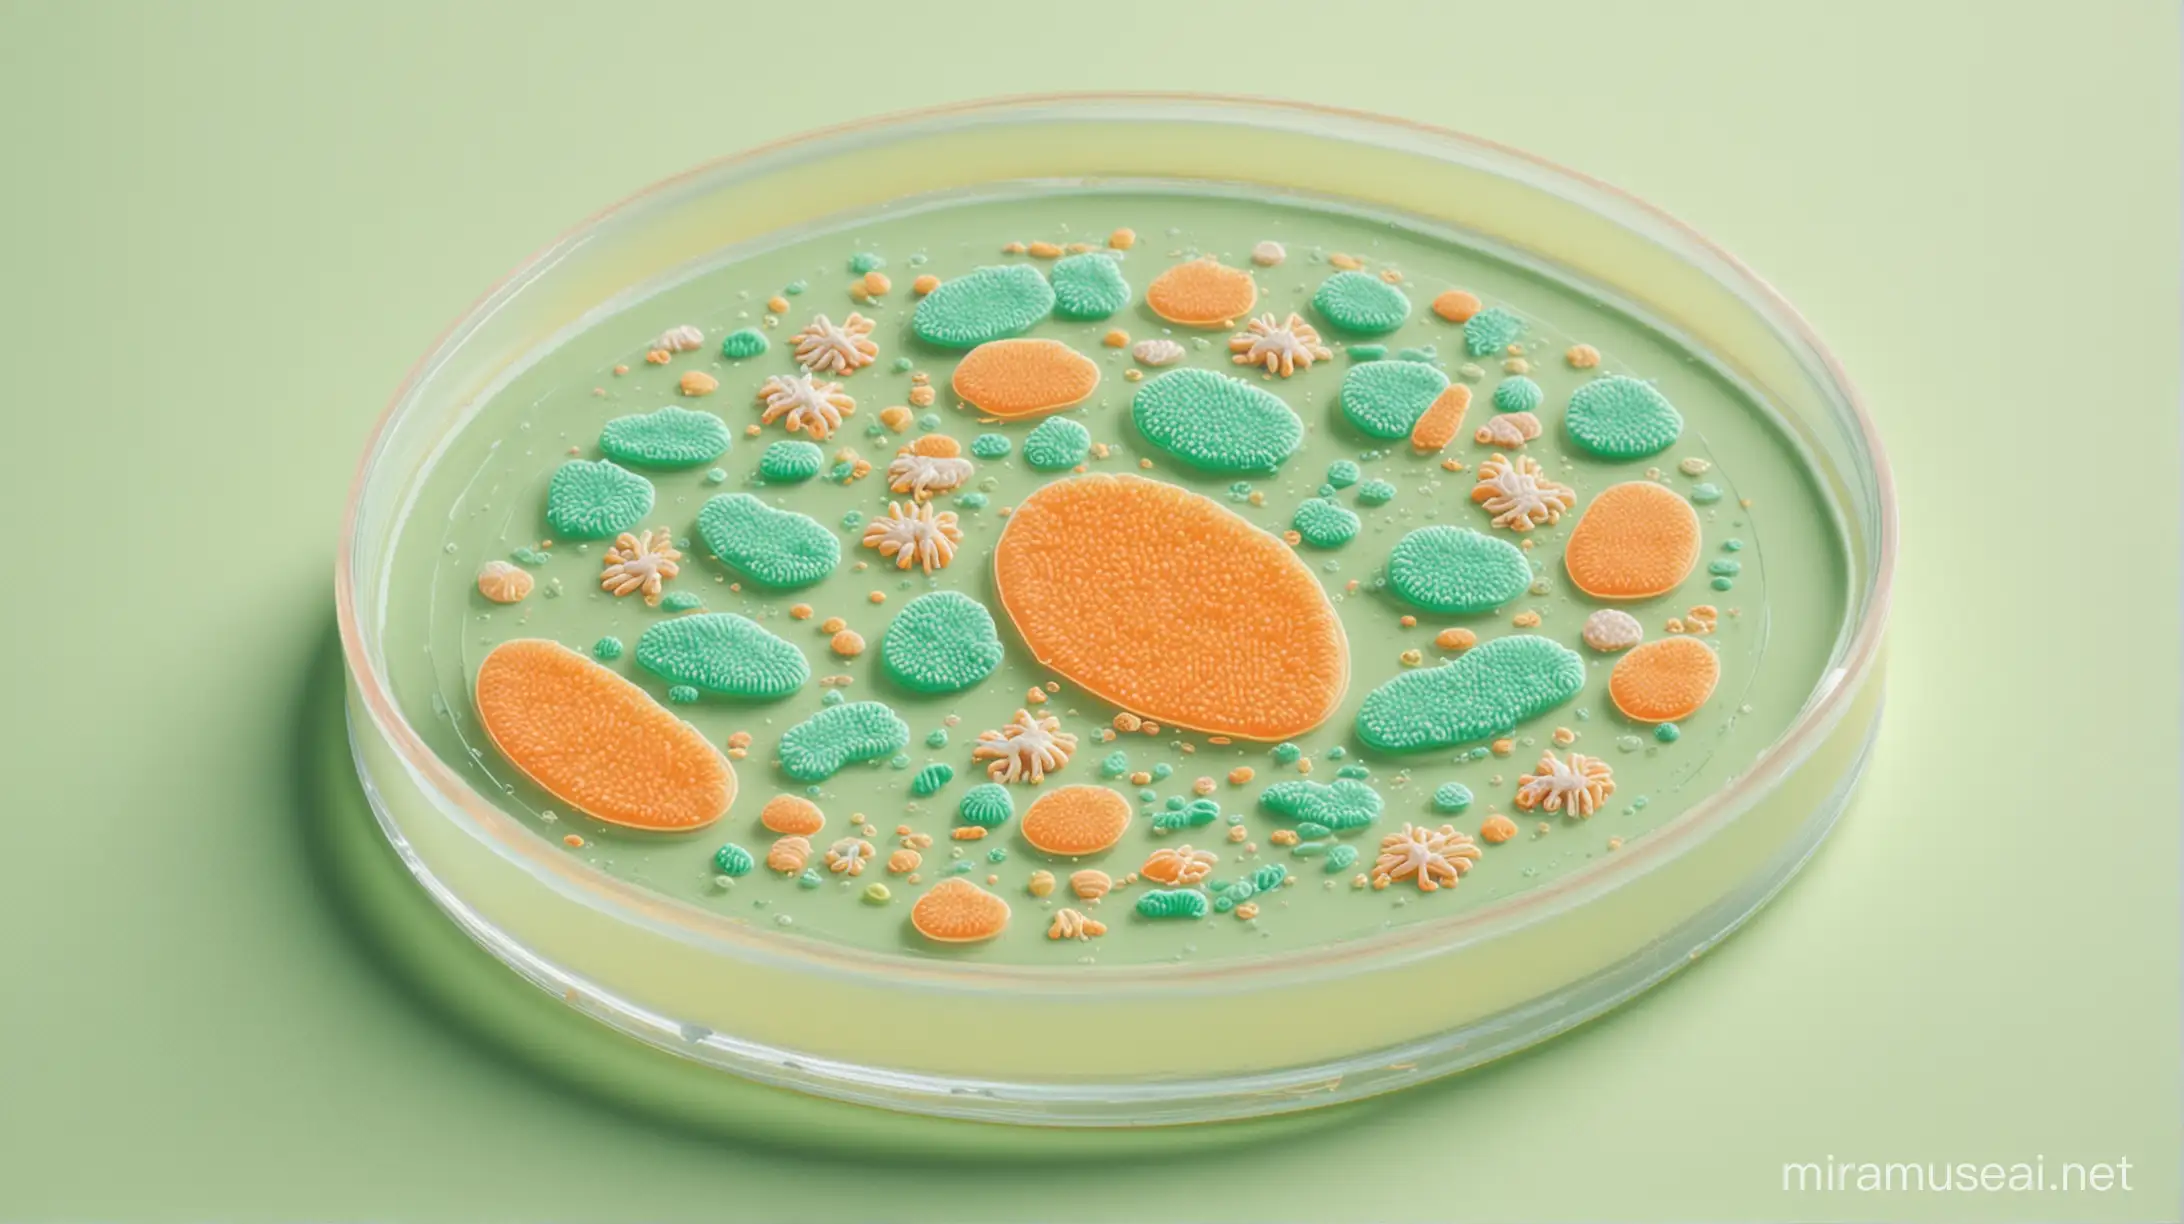 бактерии, чашка Петри, мультипликационный стиль, Disney, пастельные цвета, оранжевый, зелёный